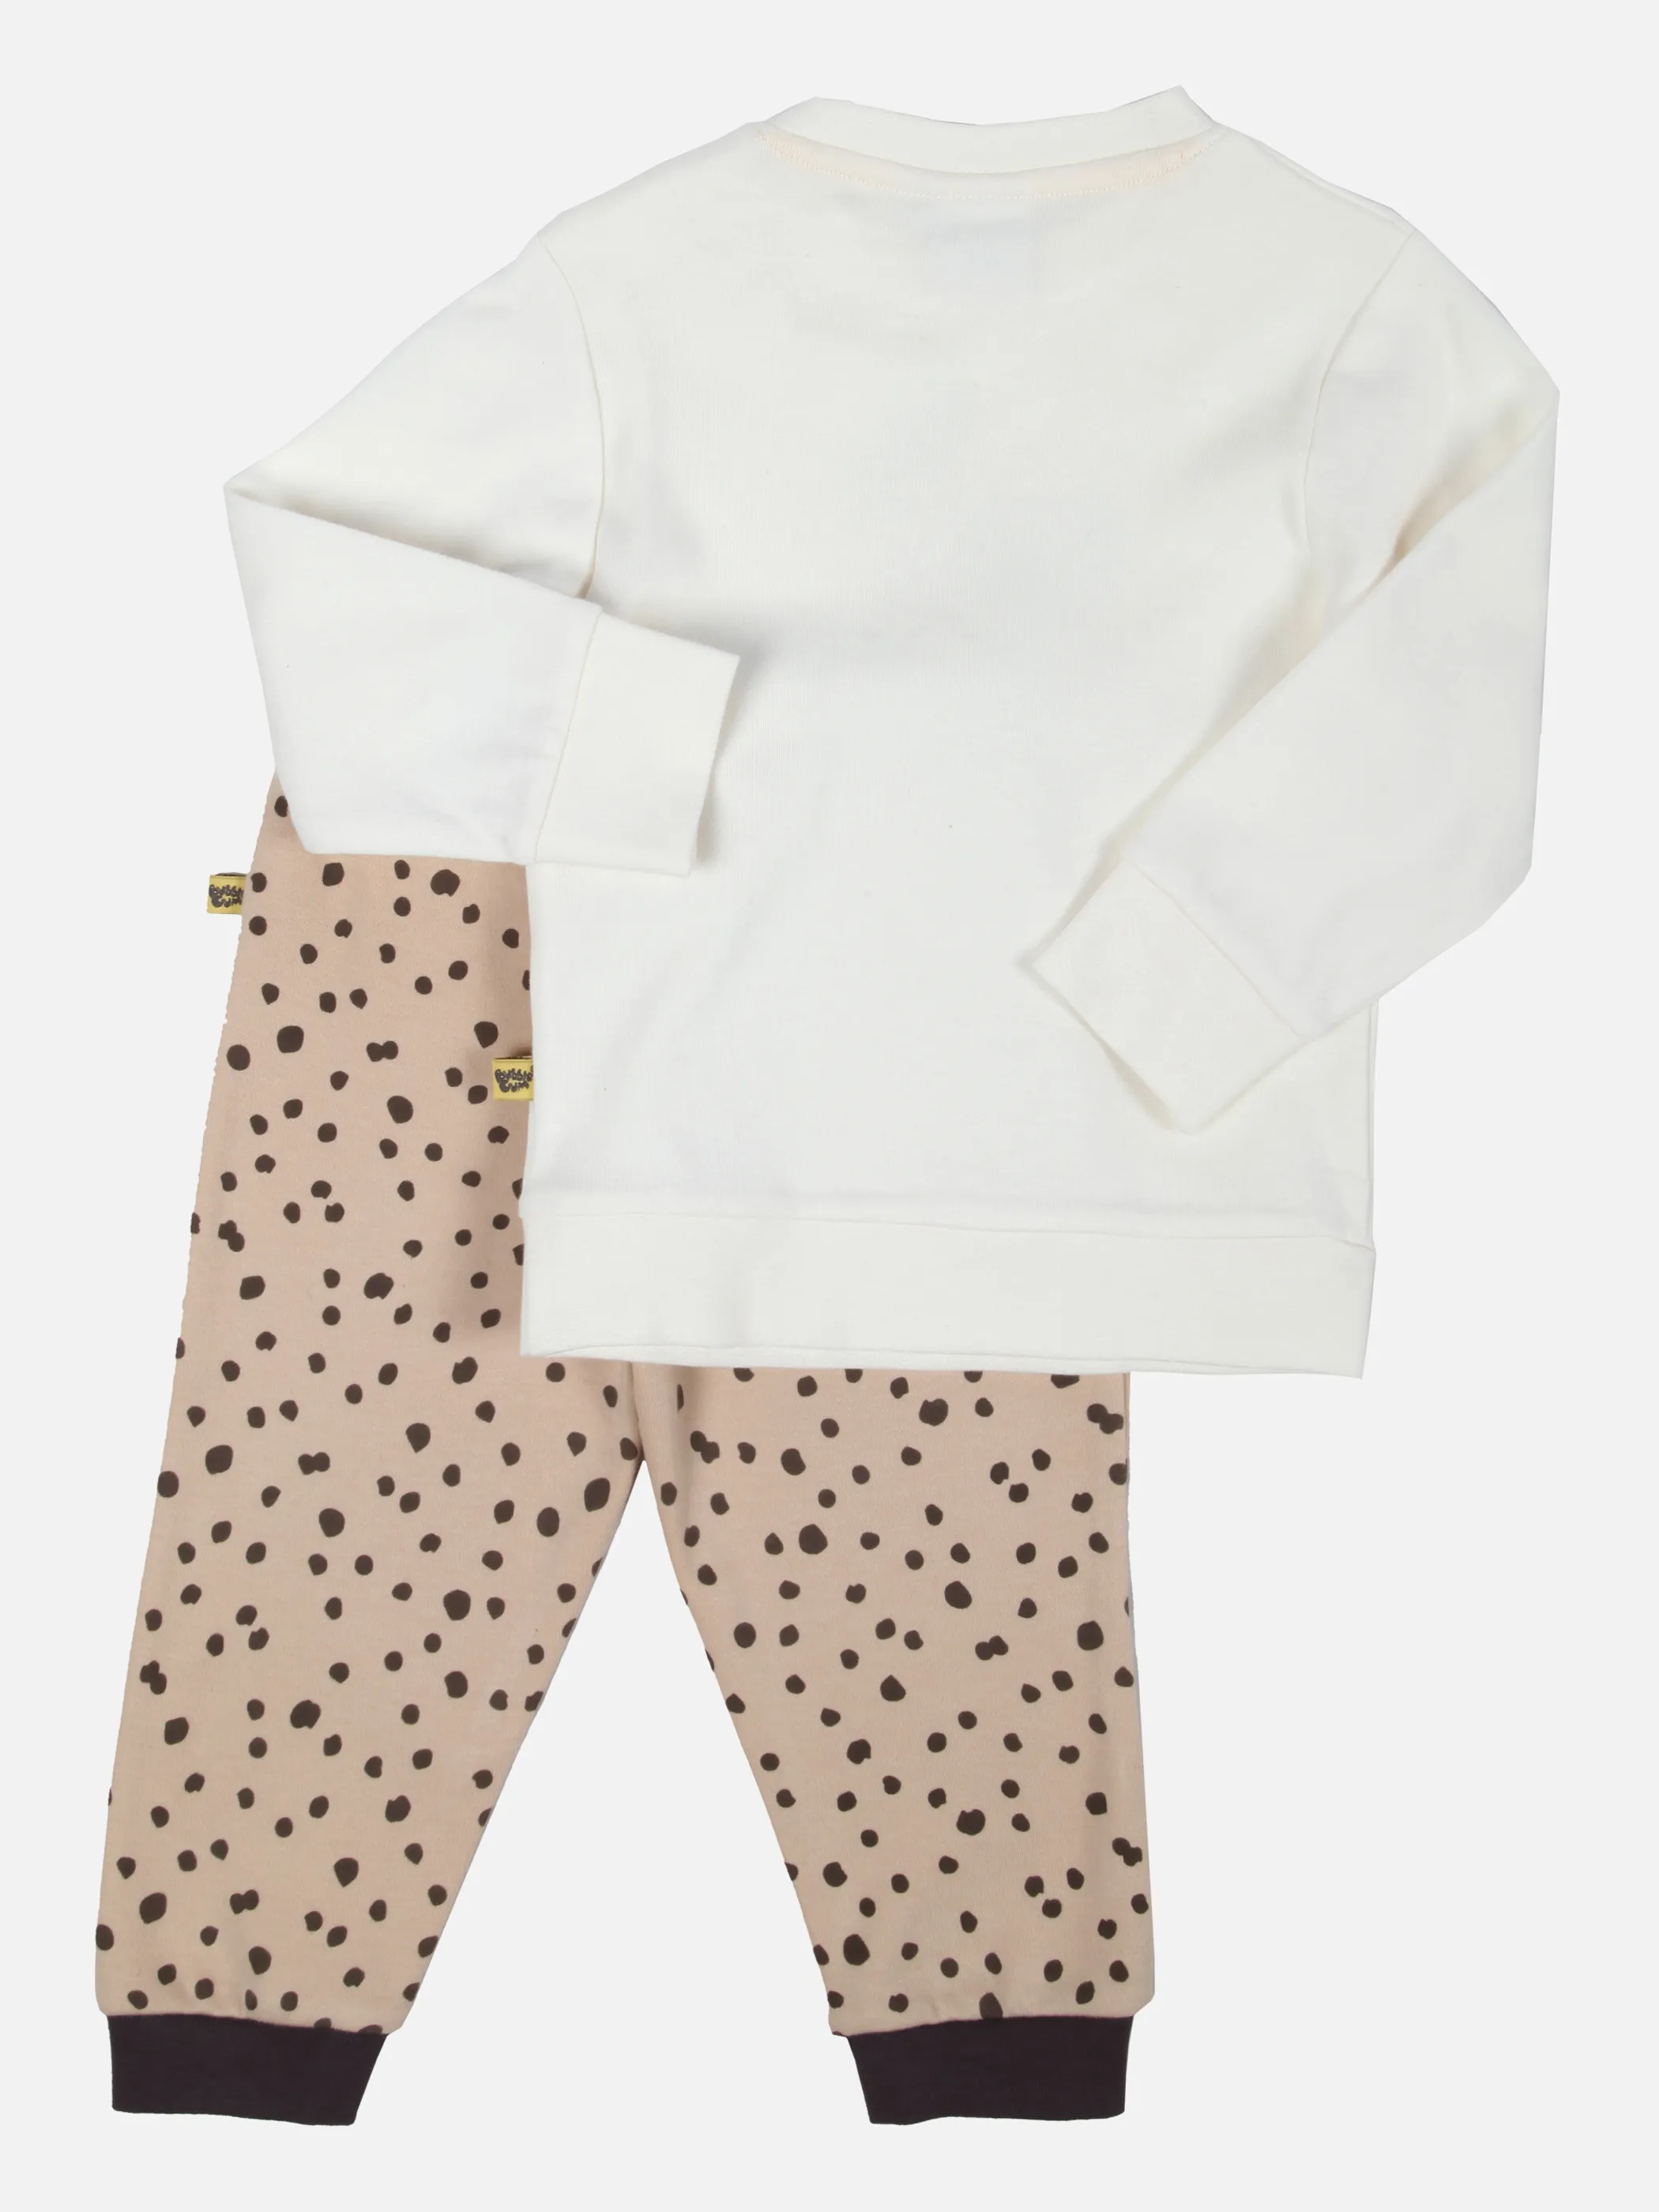 Bubble Gum Baby UNI Pyjama 2tlg Shirt 1/1 Weiß 851464 WEIß 2